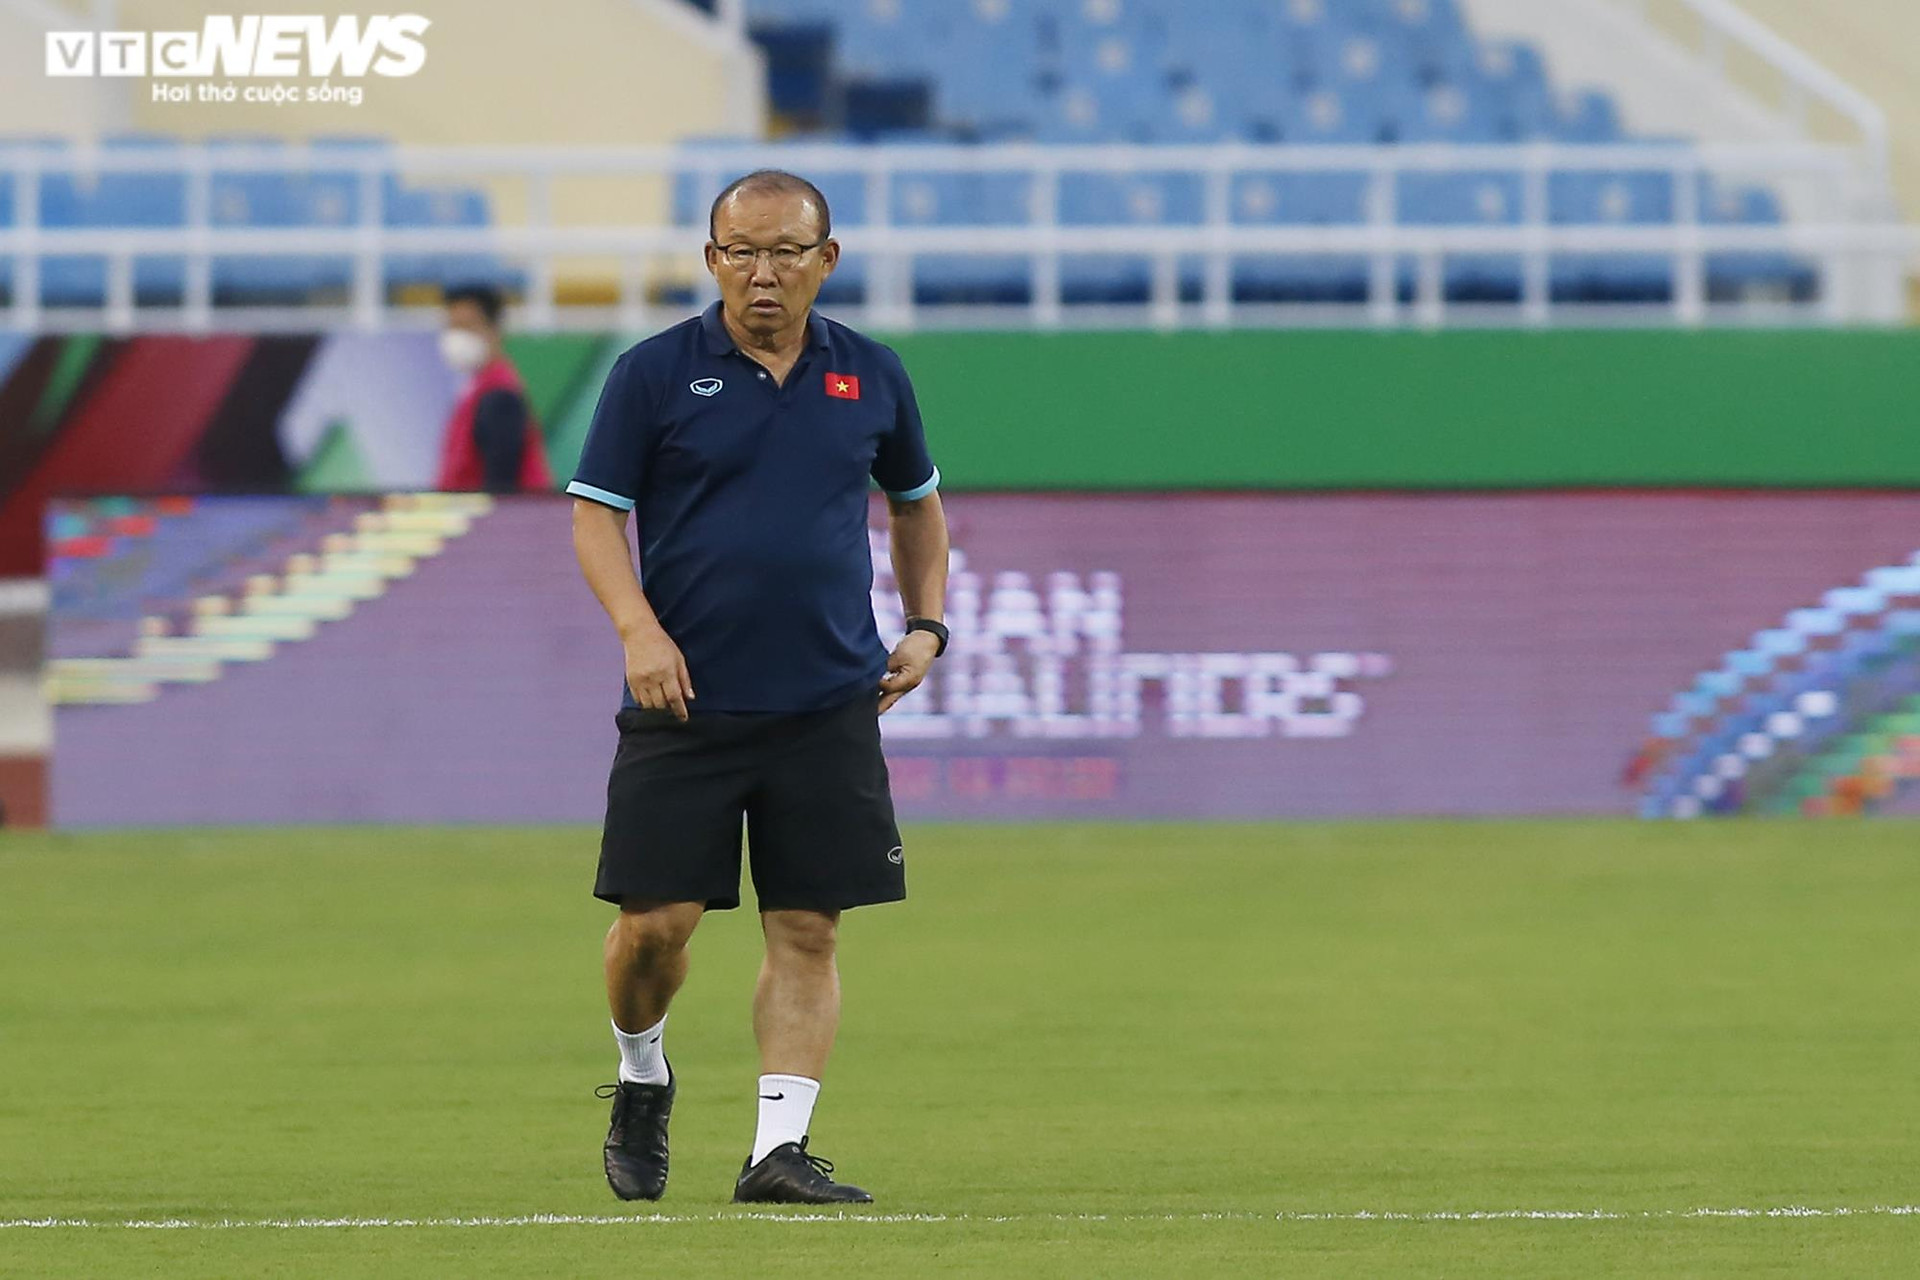 HLV Park Hang Seo đăm chiêu trước ngày tuyển Việt Nam đấu Oman - 6